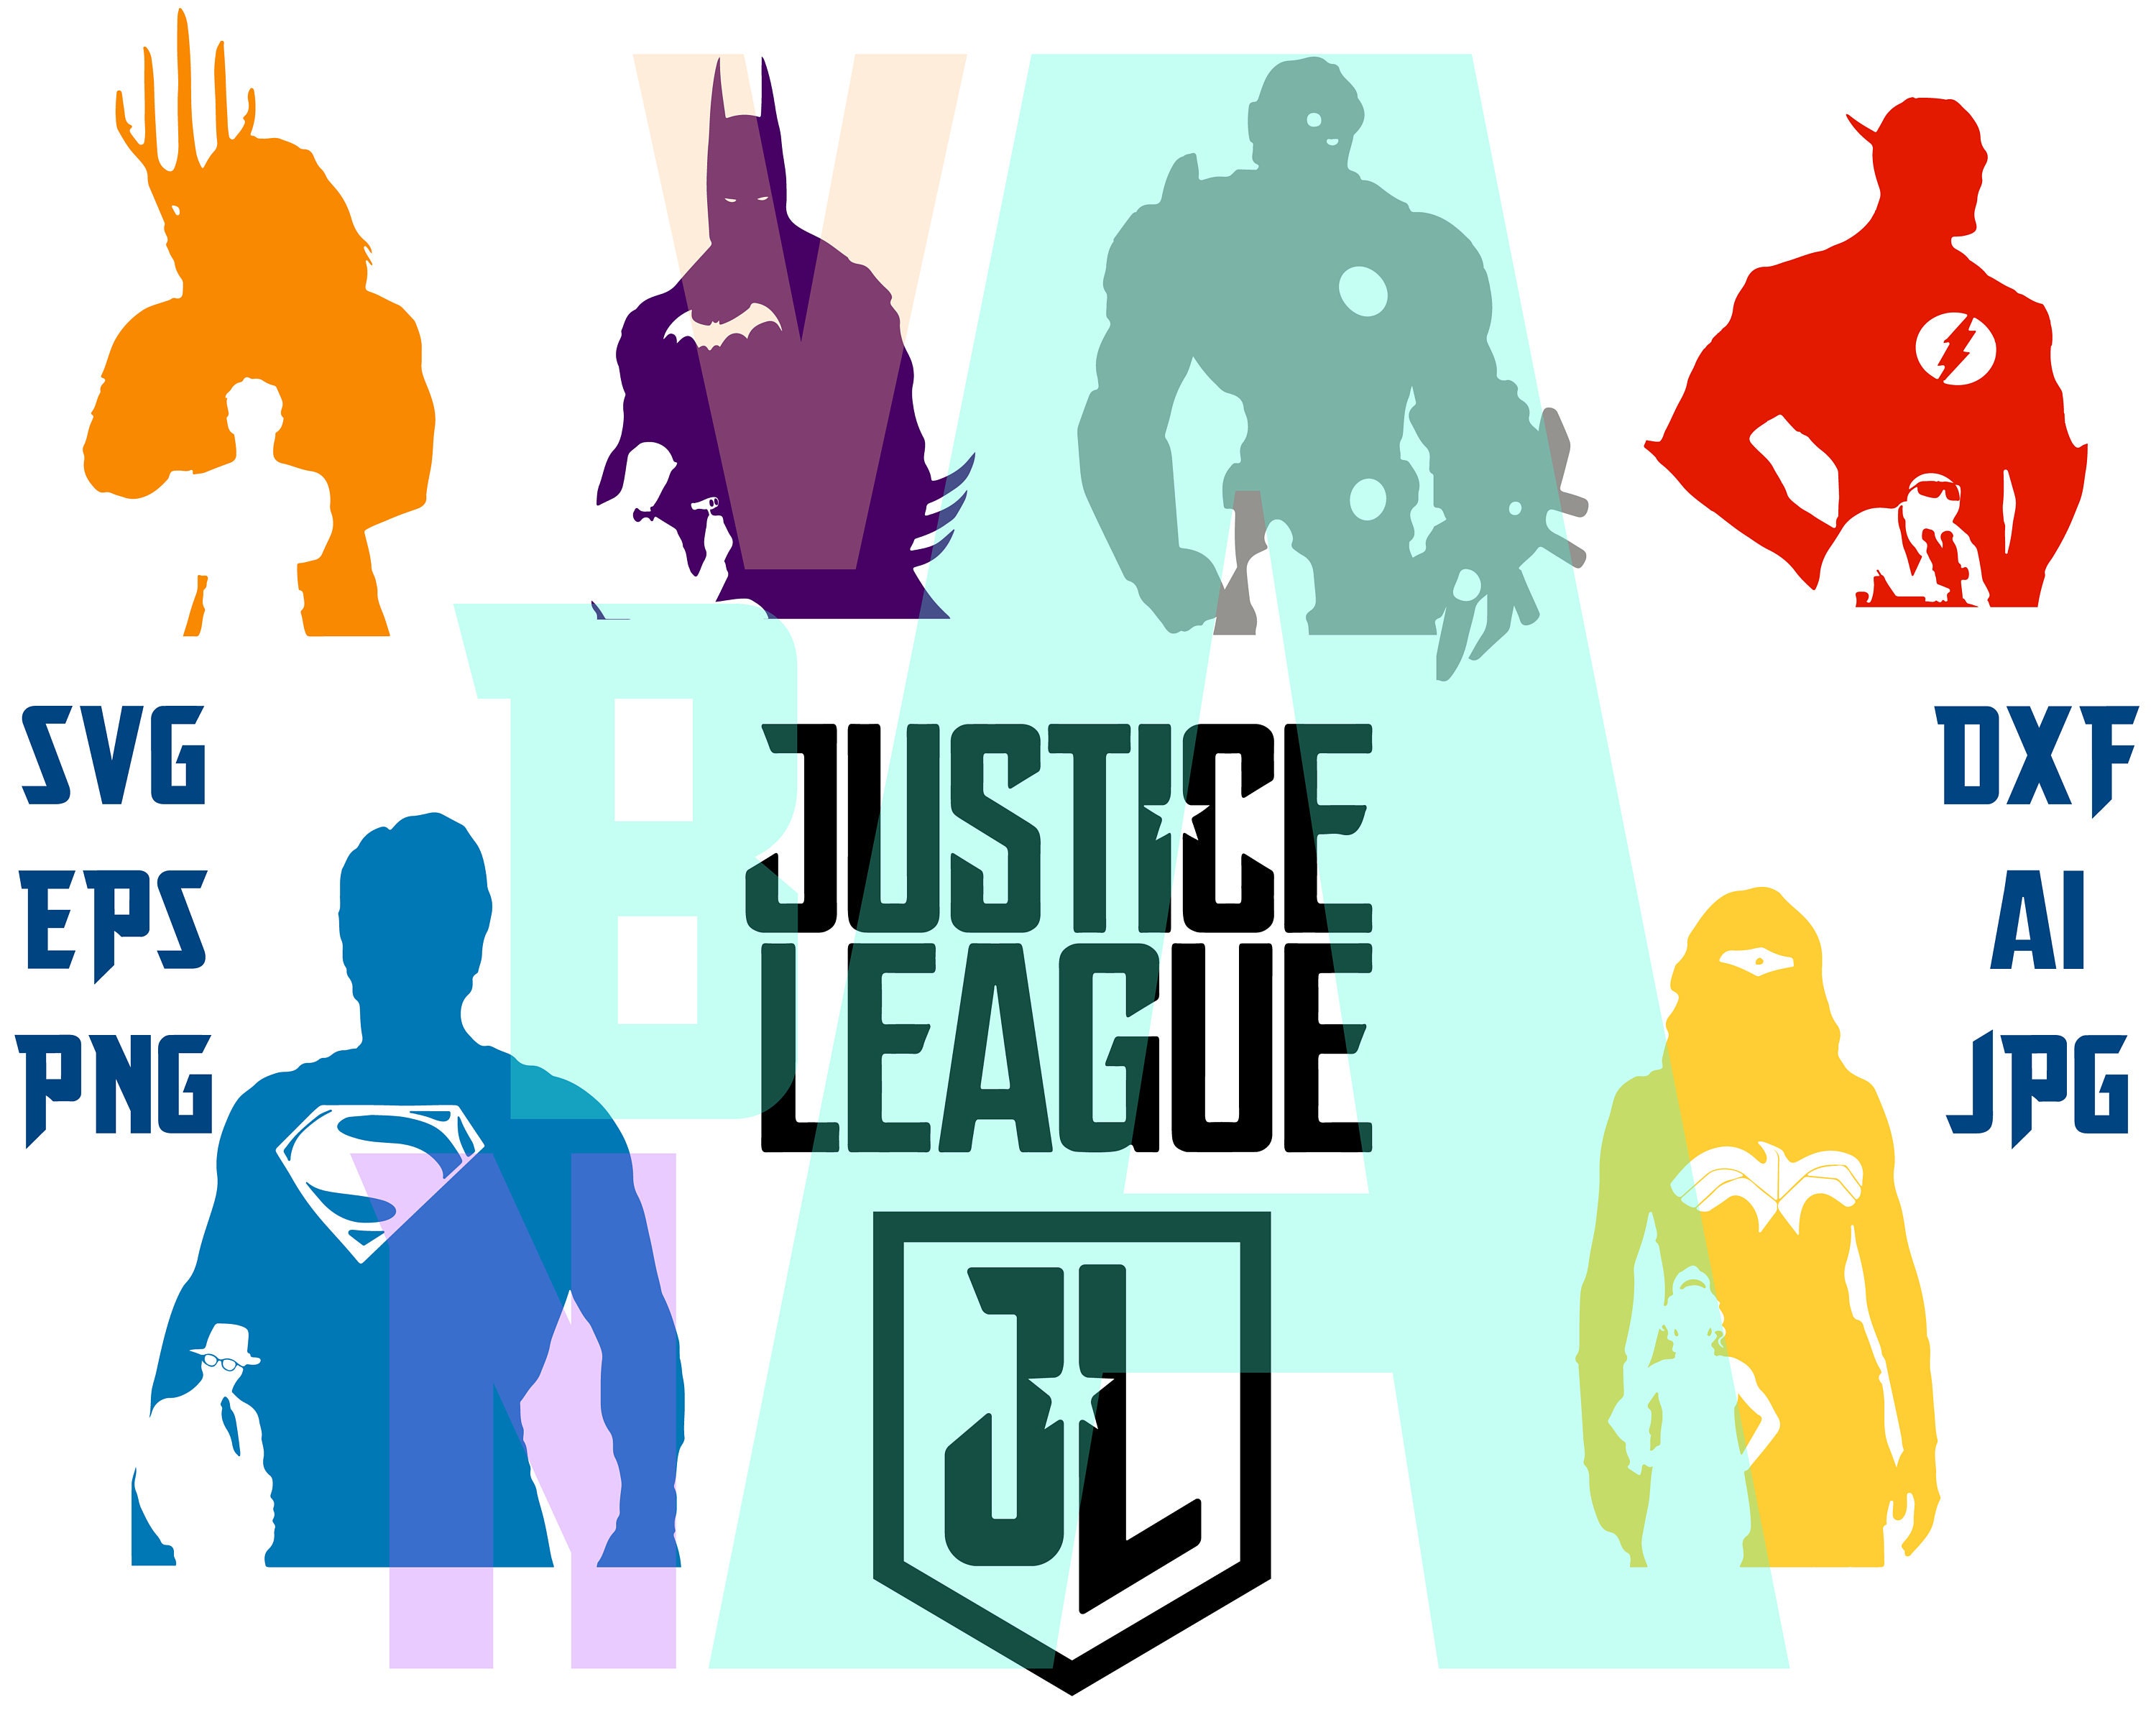 Justice league SVG justice league clipart justice league | Etsy